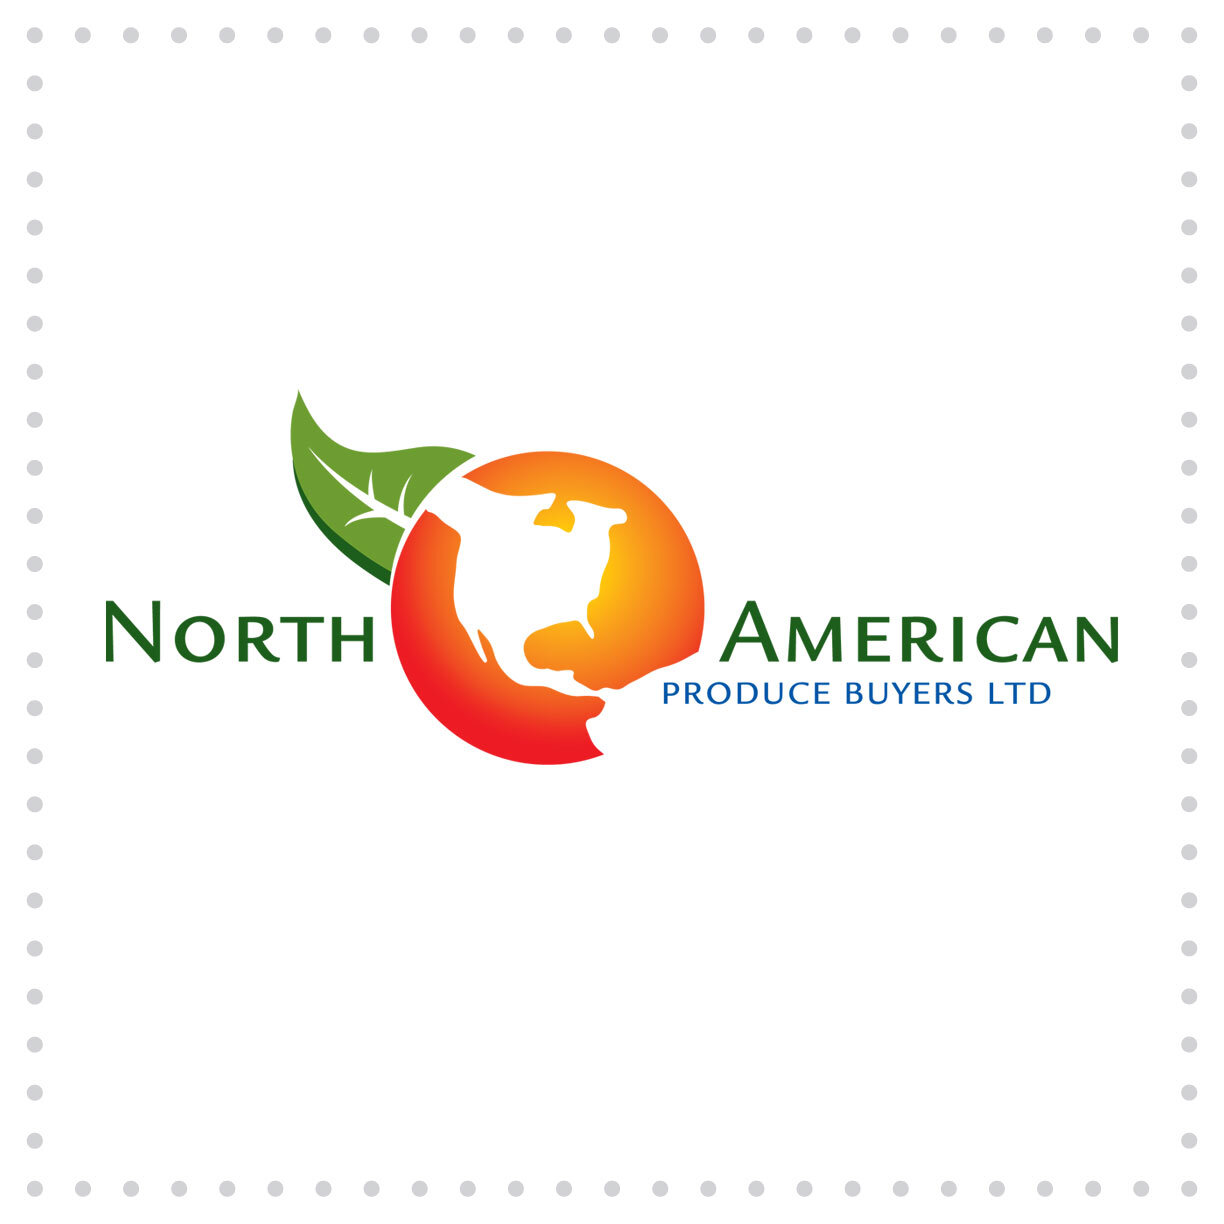 Ball-LogoDesign-NorthAmerican.jpg